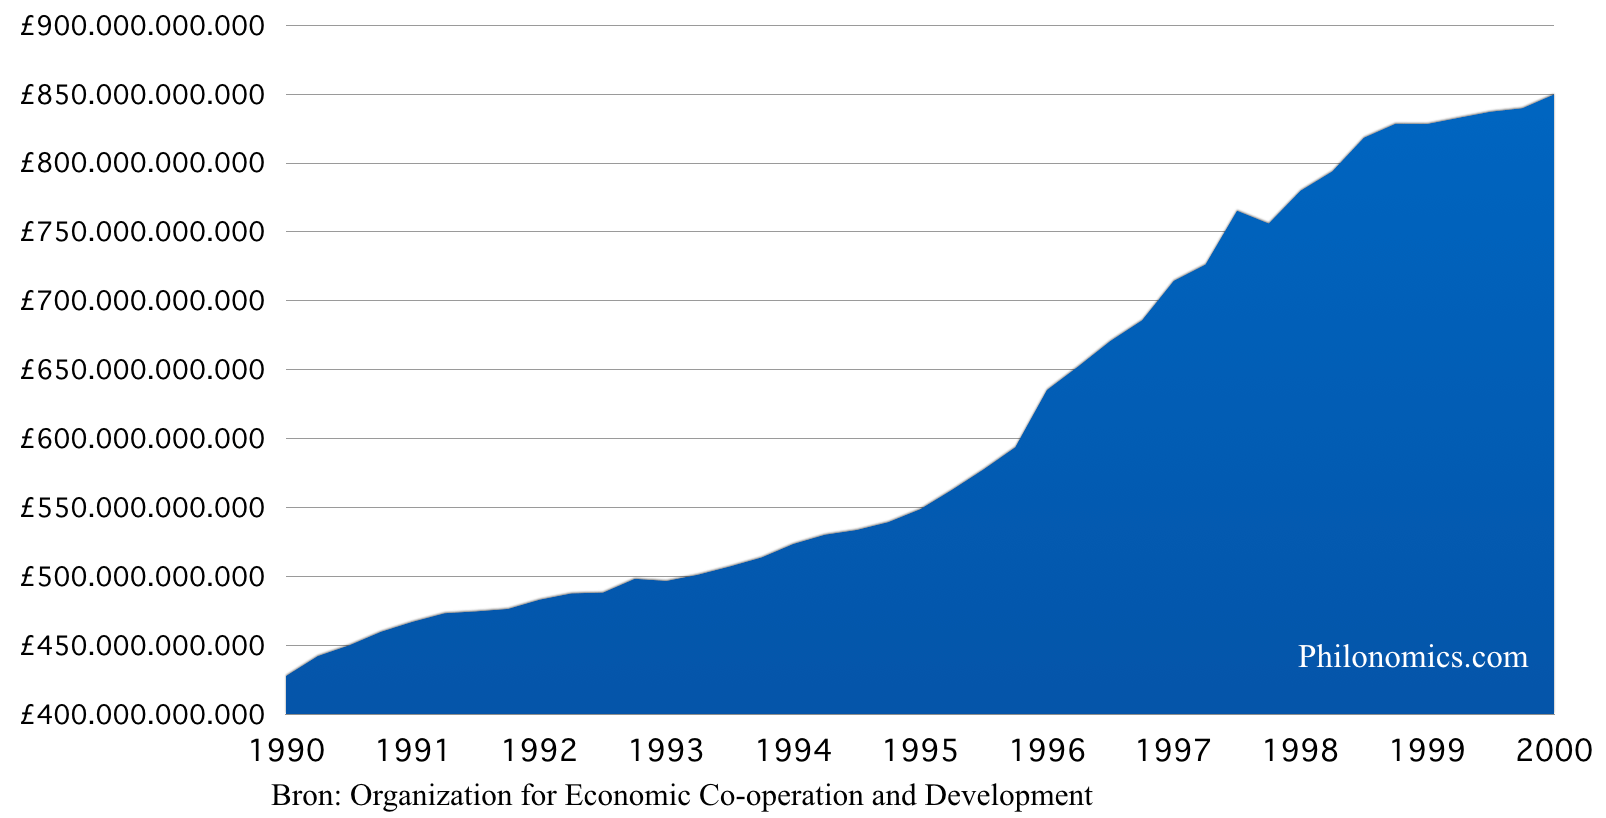 Geldhoeveelheid M3 Verenigd Koninkrijk - 1990-2000